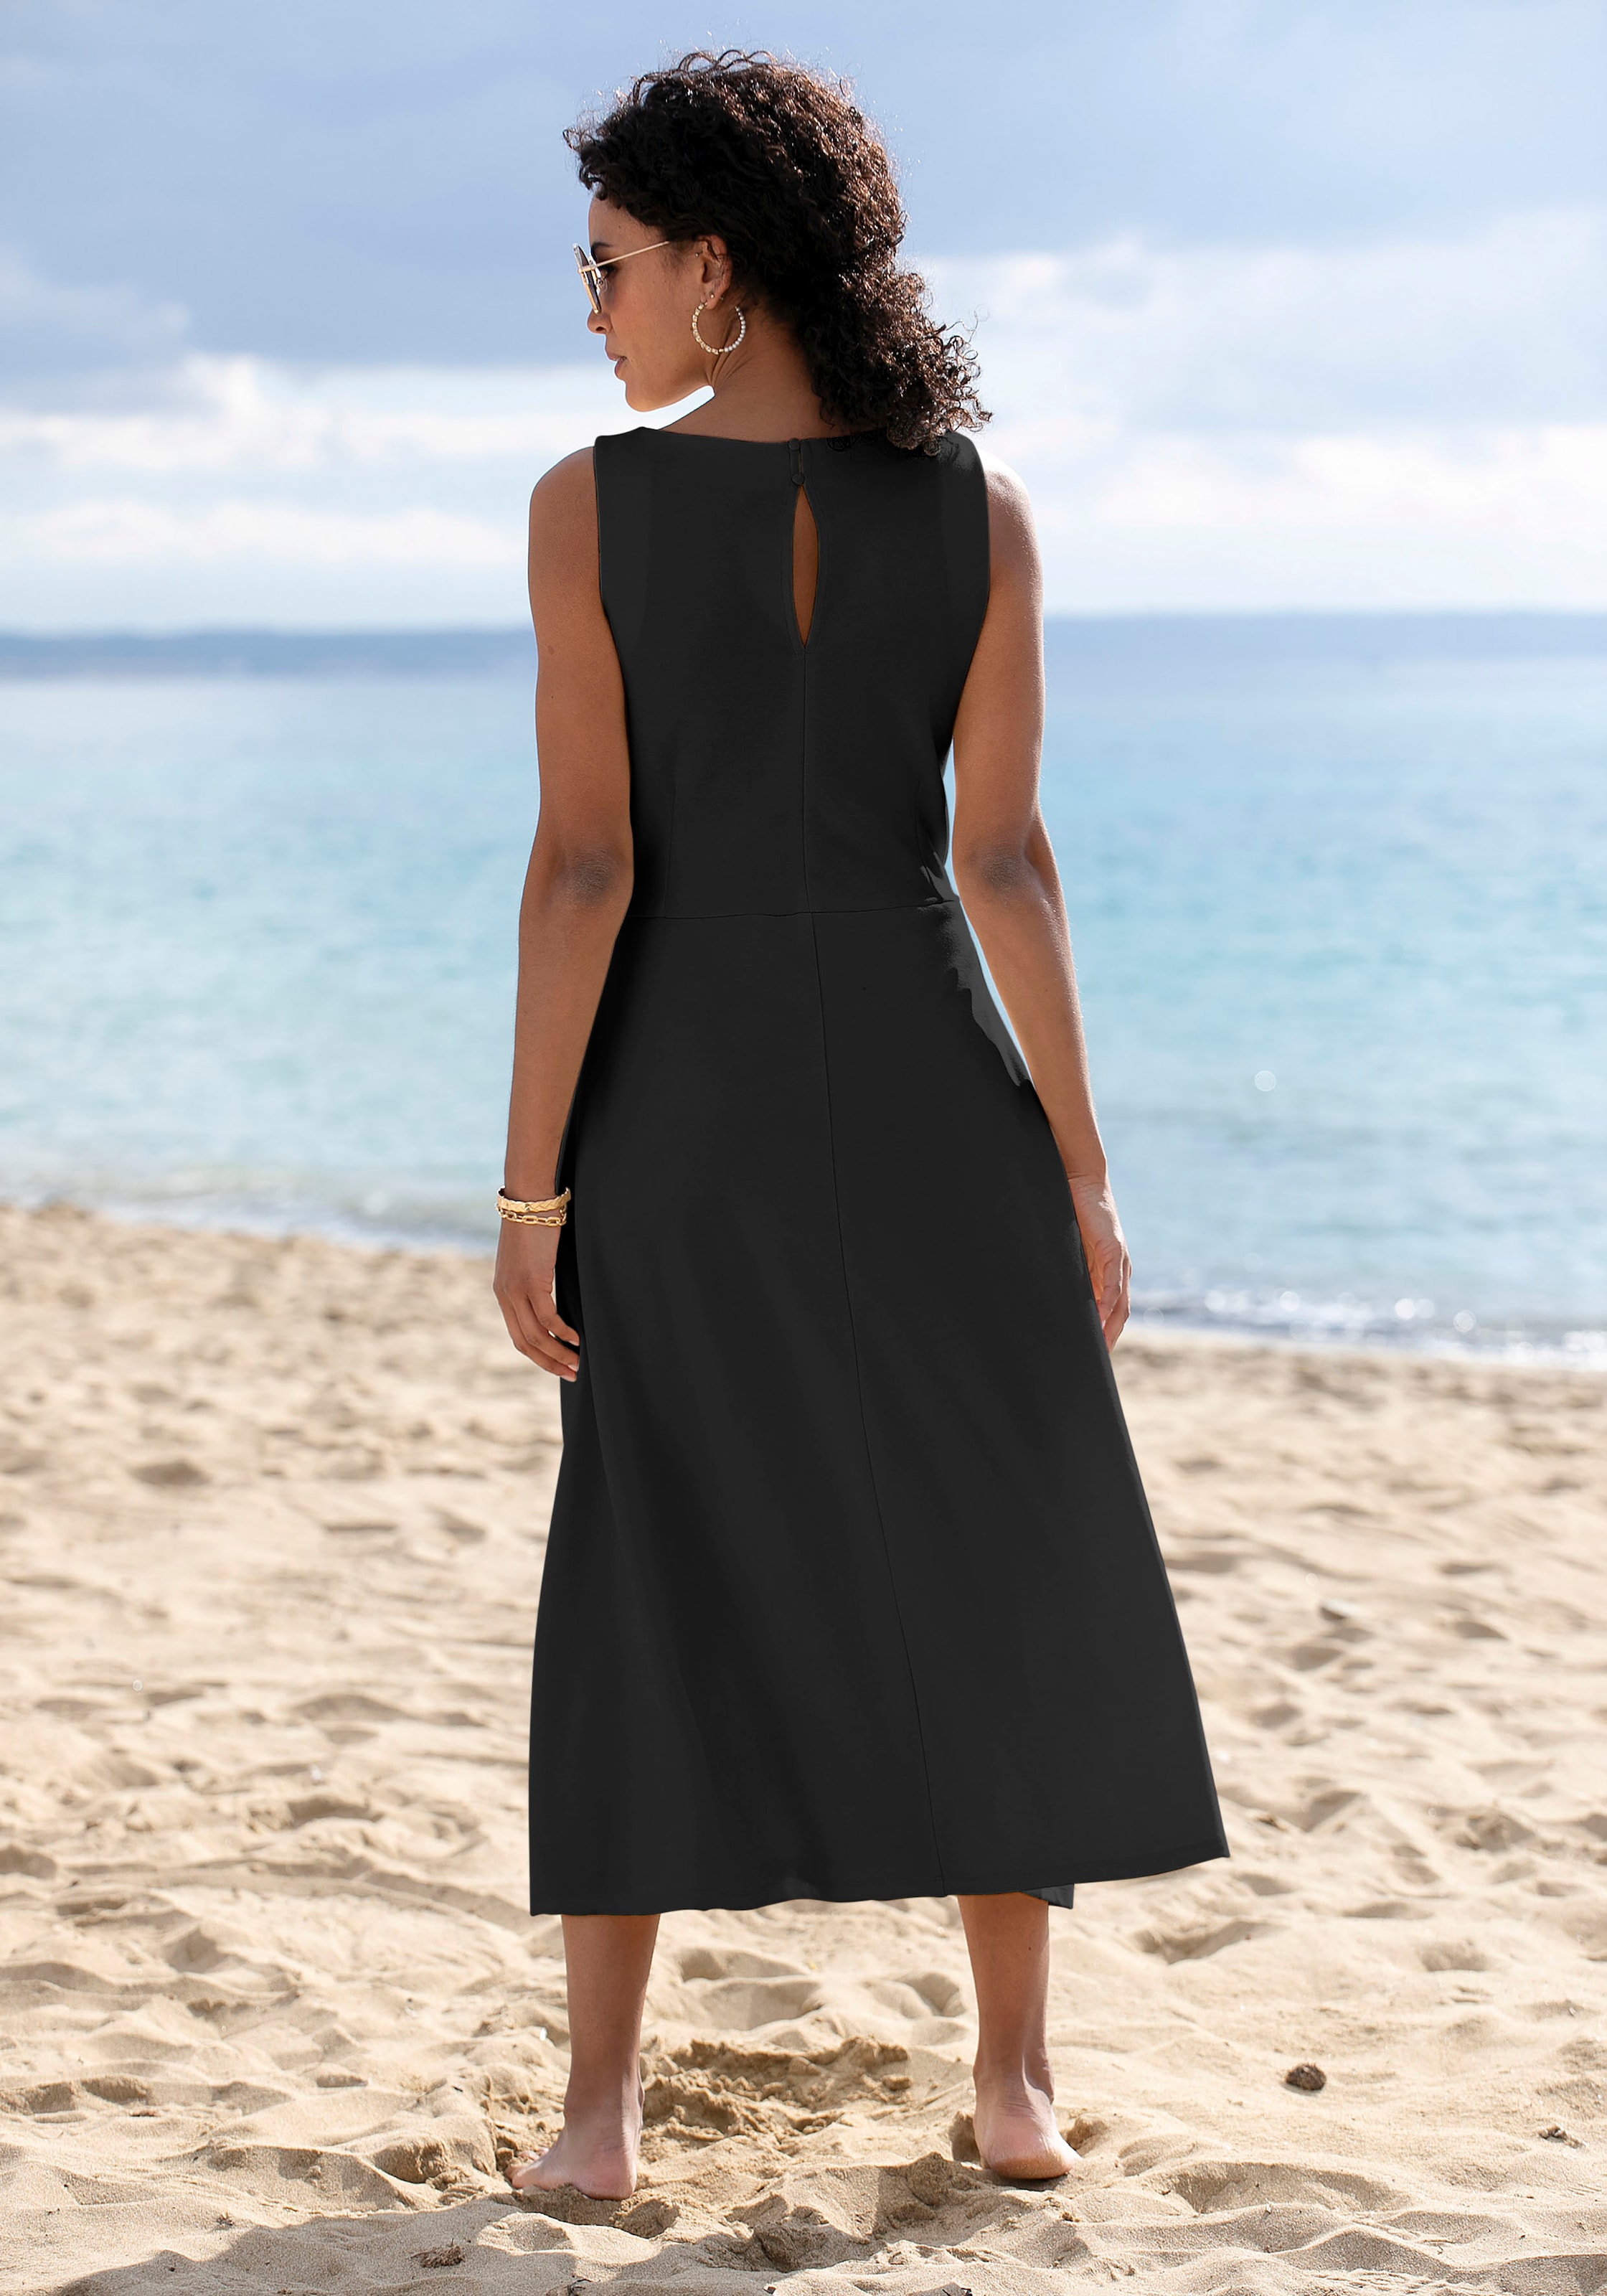 Beachtime Sommerkleid » LASCANA Lingerie online & | Unterwäsche kaufen Bademode